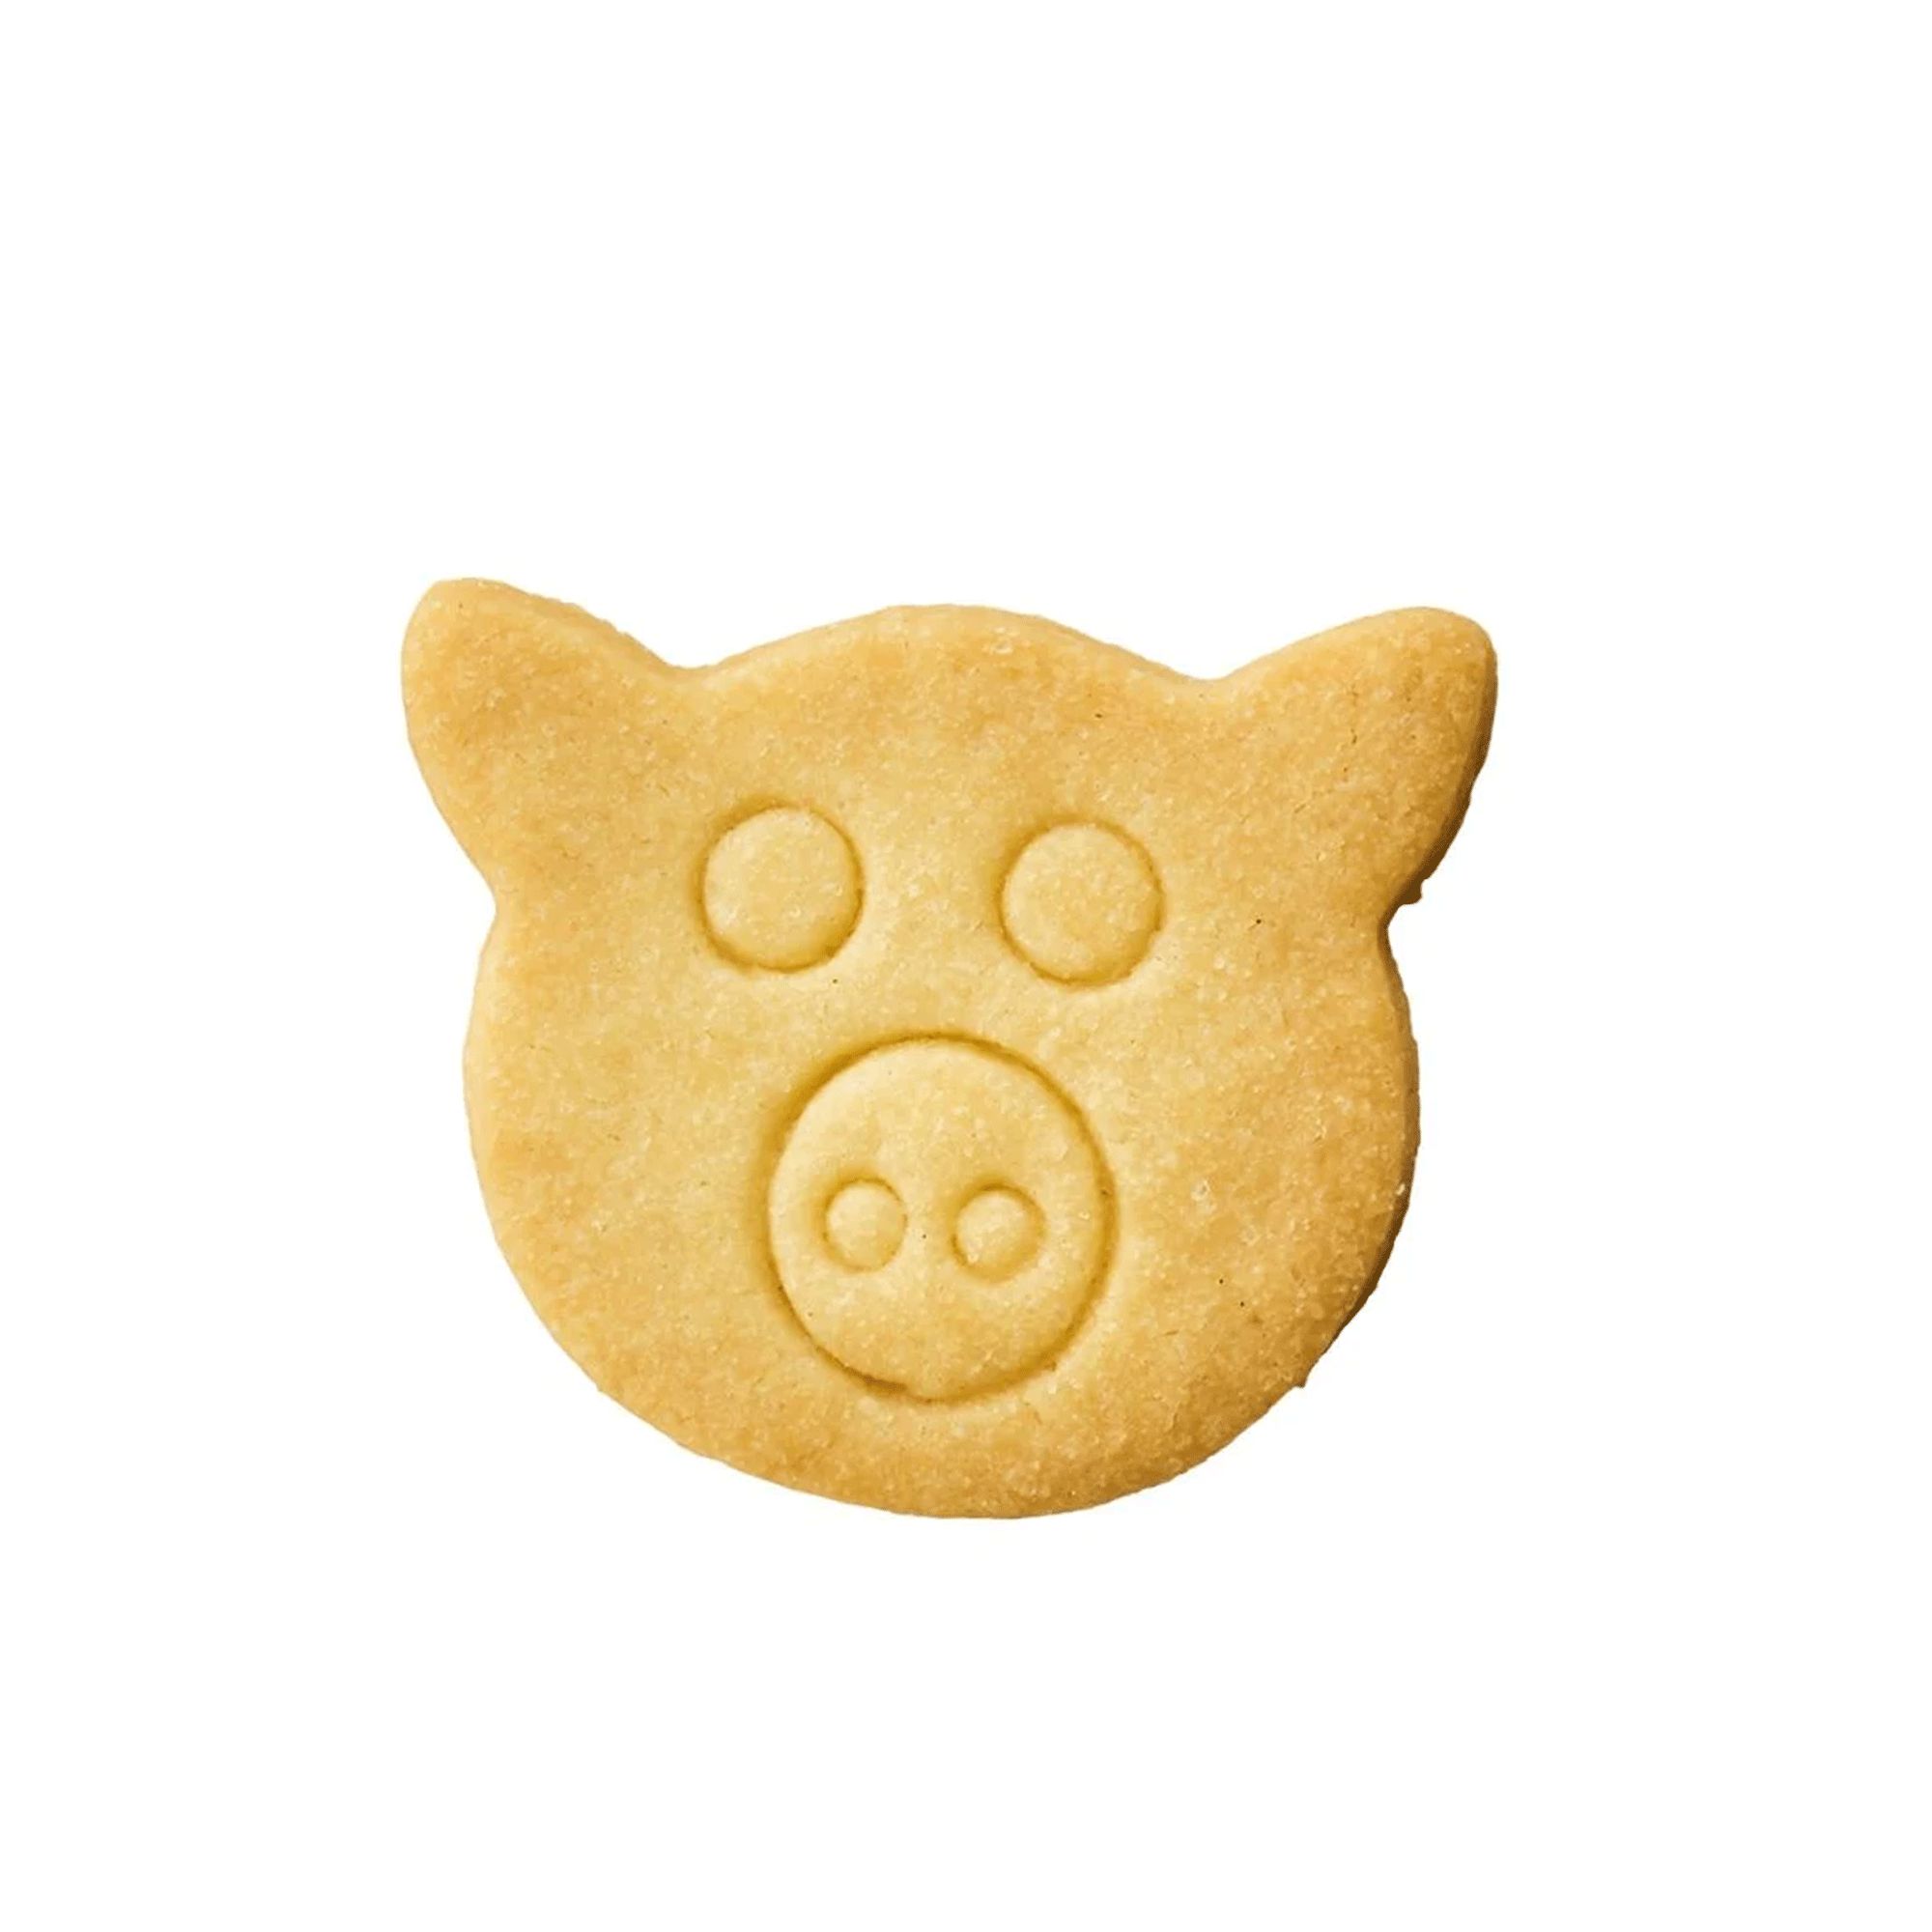 RBV Birkmann - Cookie cutter pork pastry 6 cm